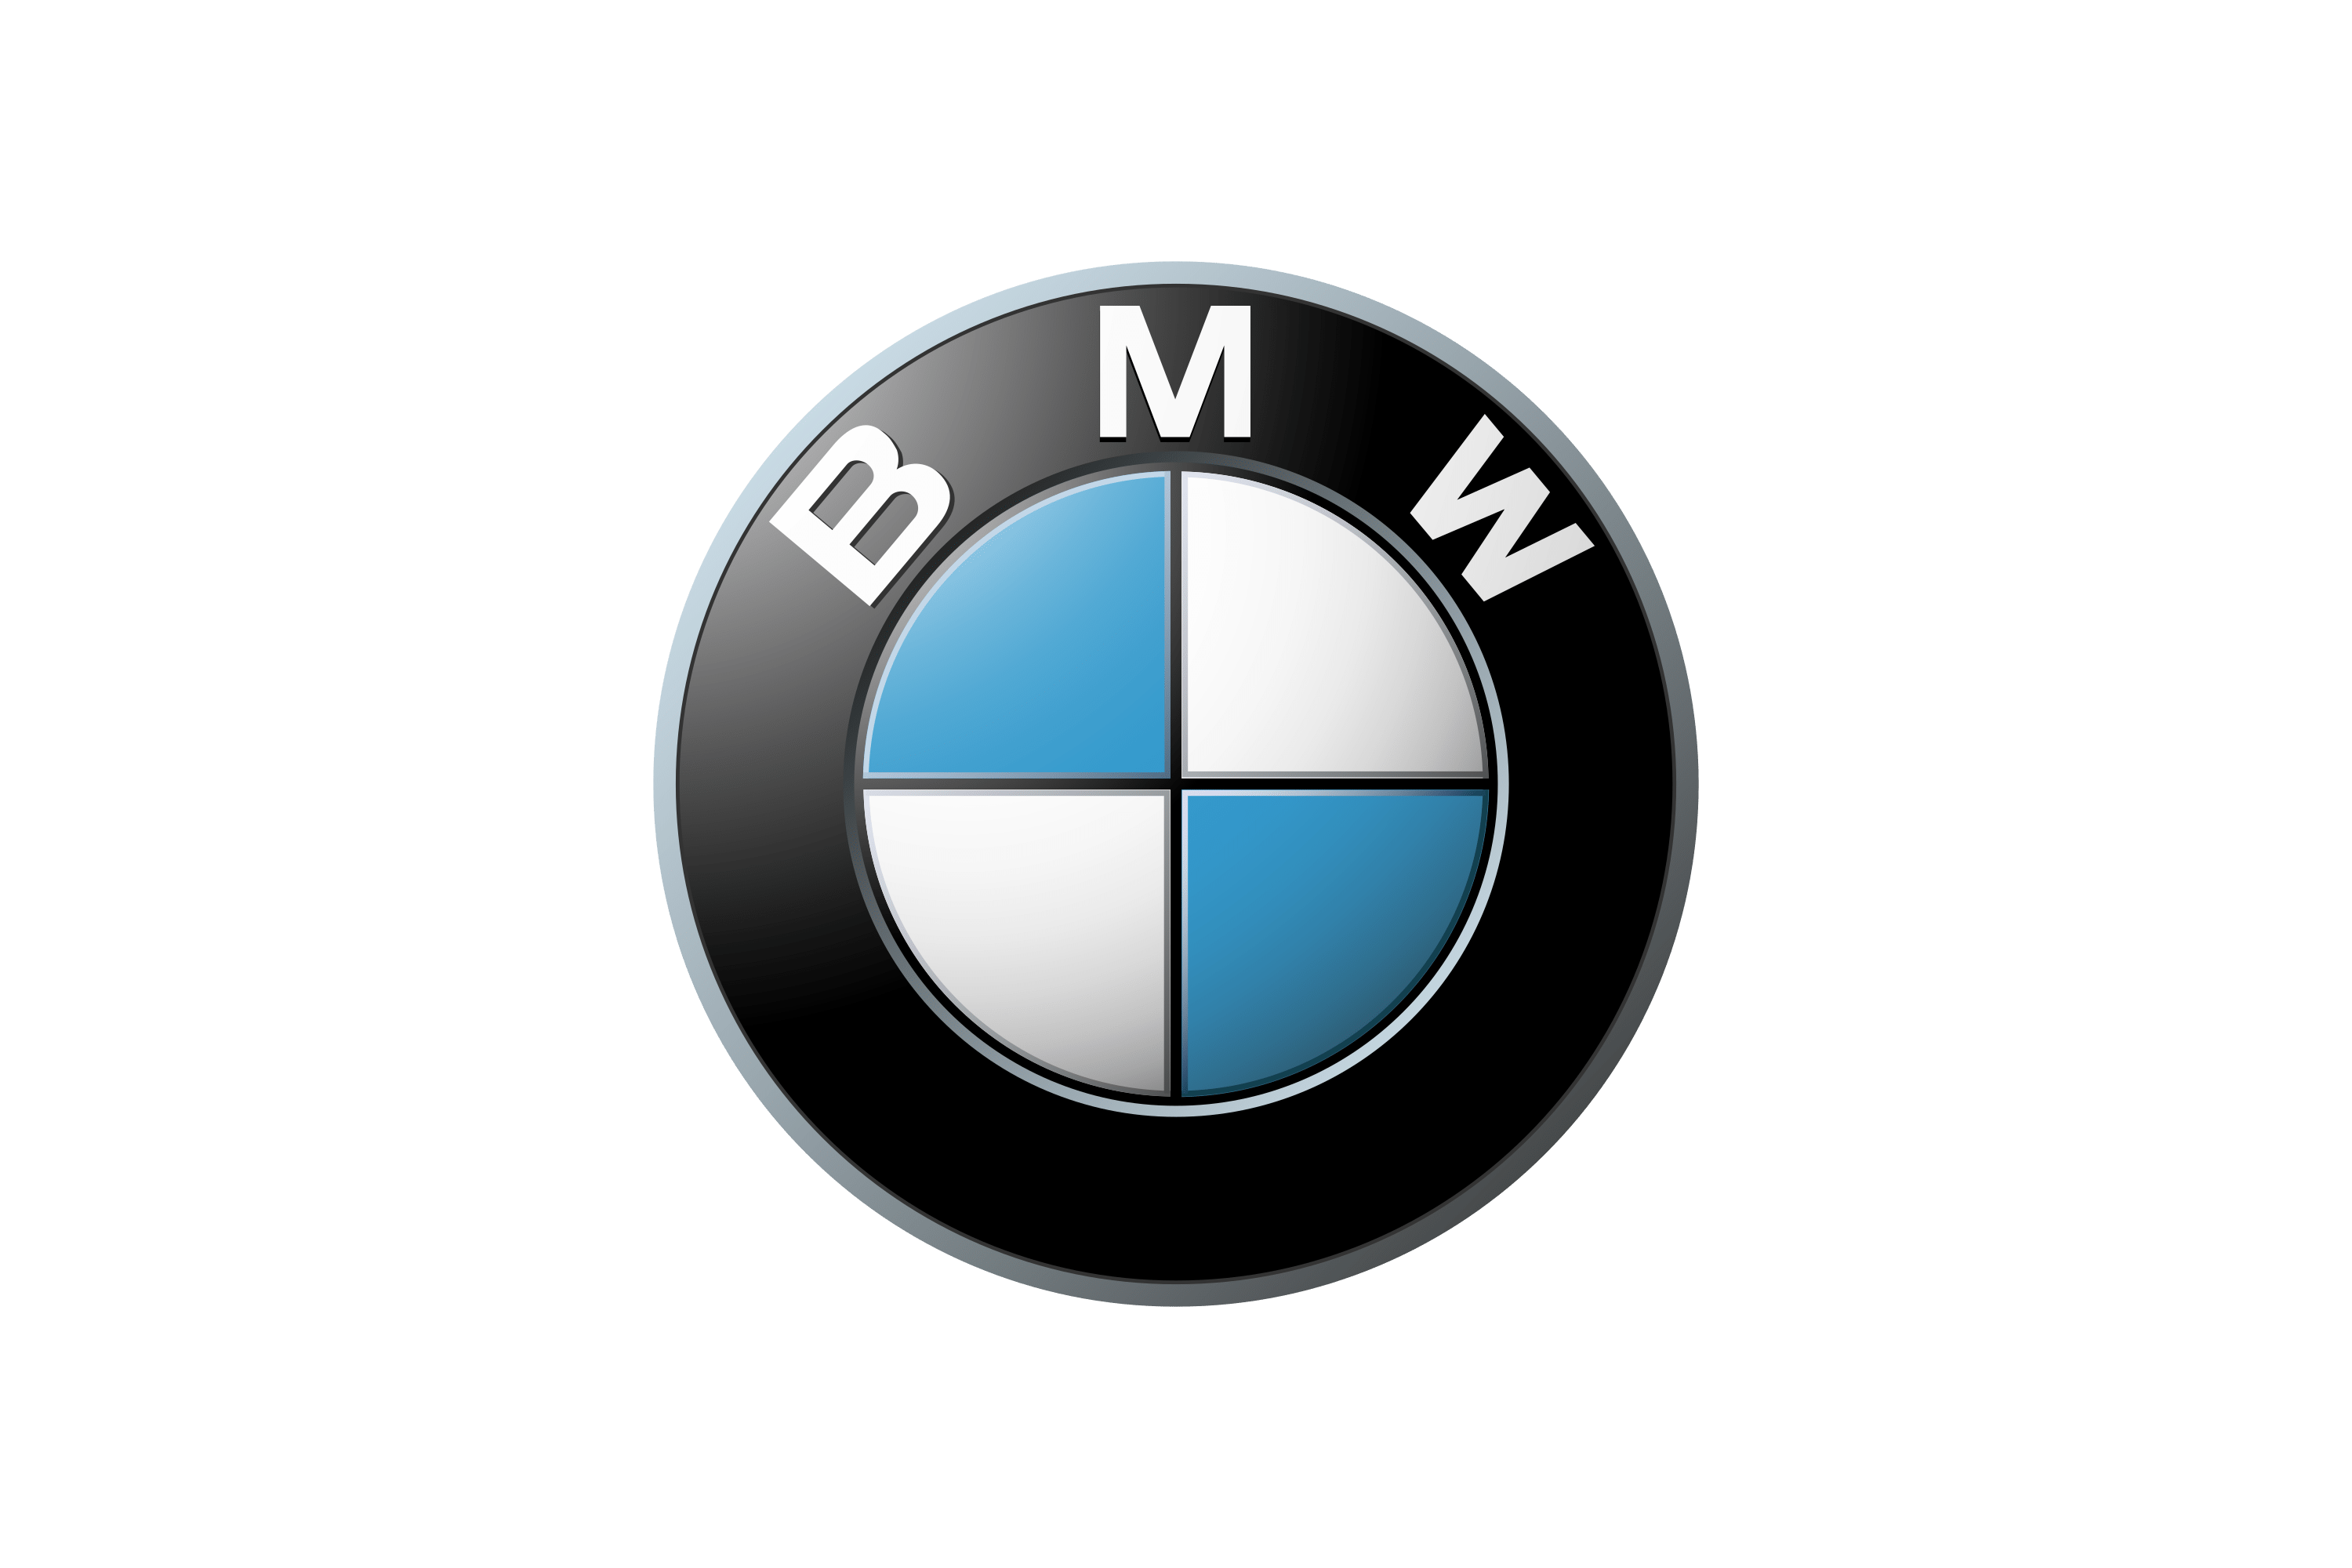 Download BMW Motorrad Logo in SVG Vector or PNG File Format - Logo.wine